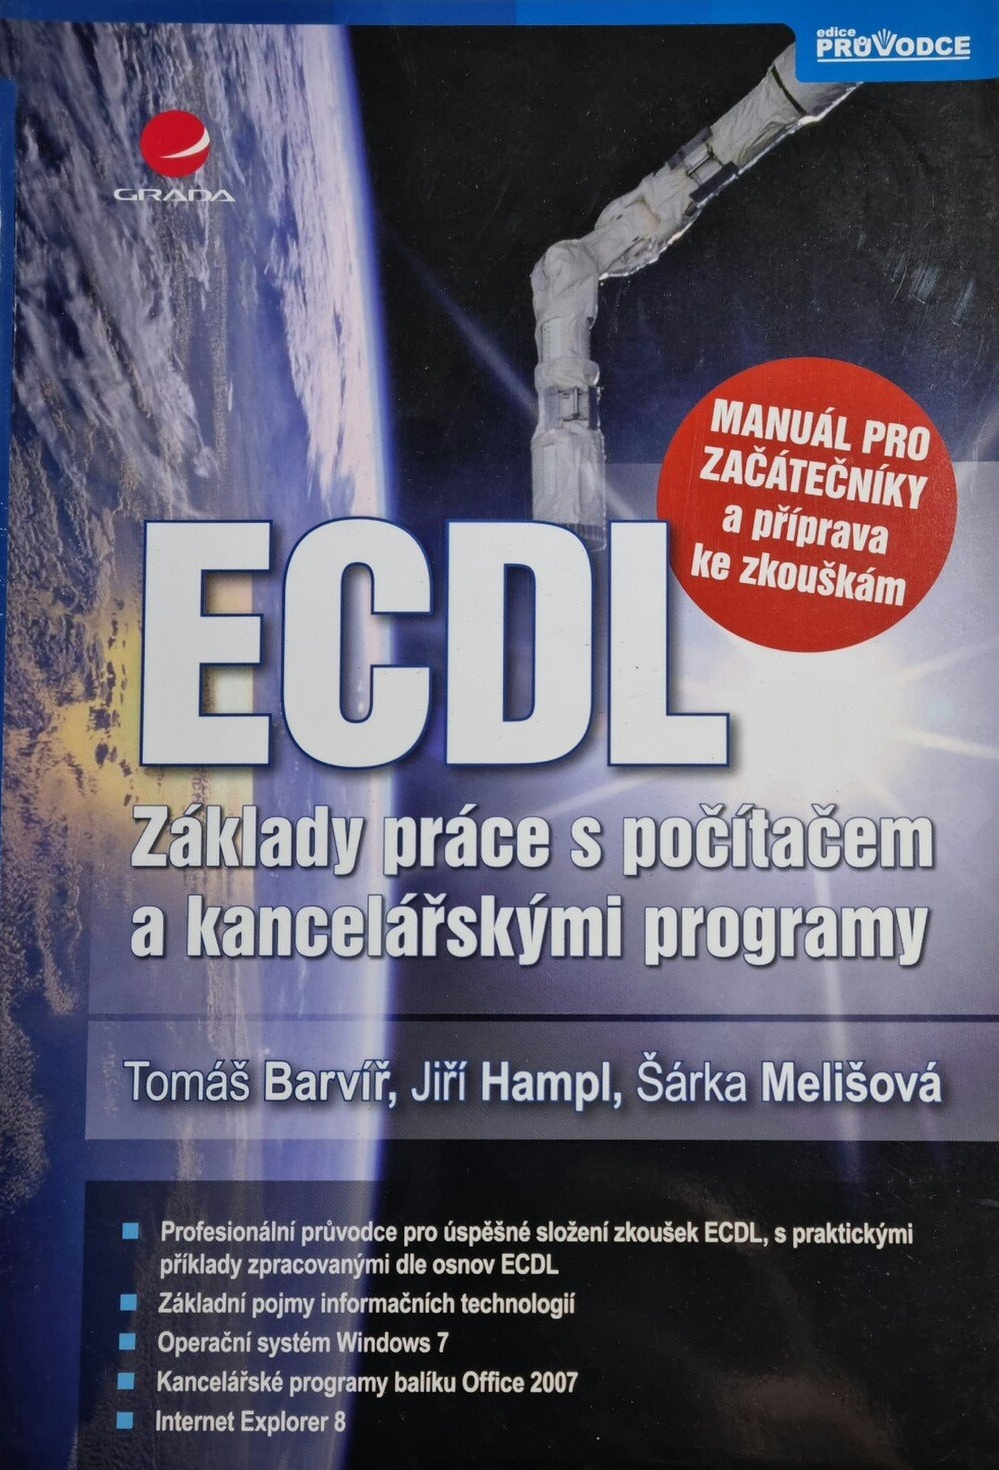 ECDL-Základy práce s počítačem a kancelářskými programy